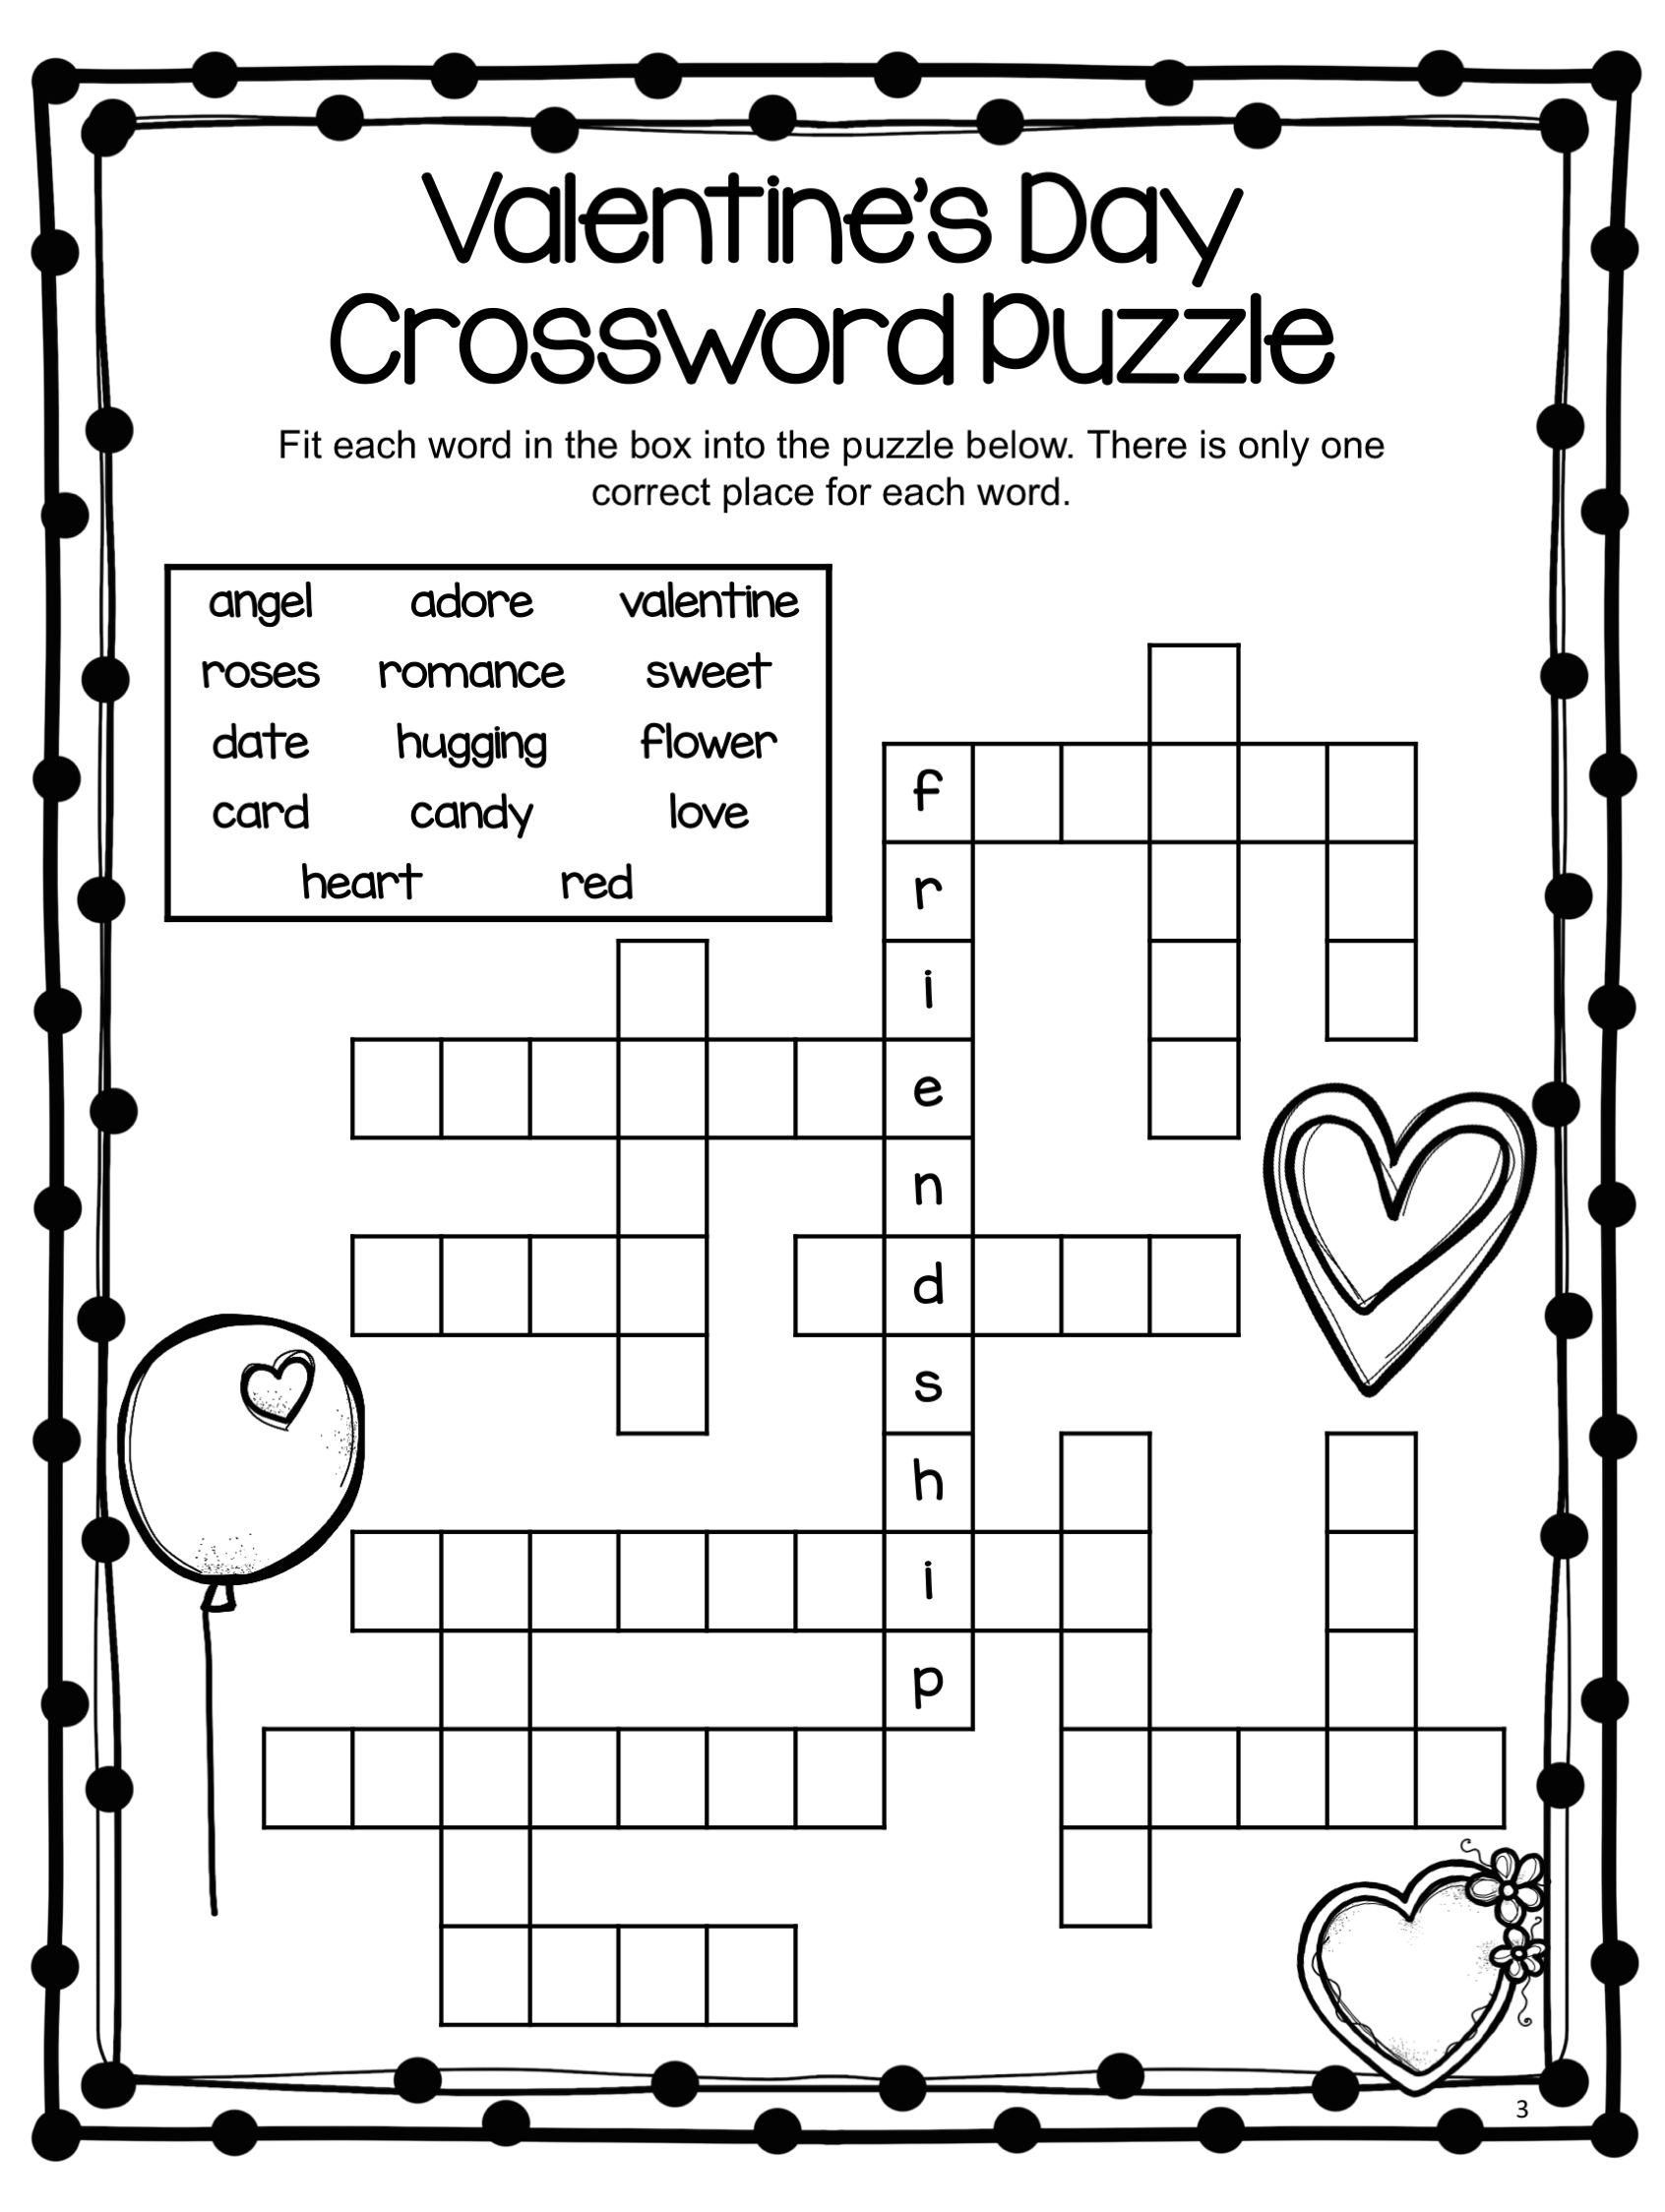 valentines-crossword-puzzles-free-printable-printable-crossword-puzzles